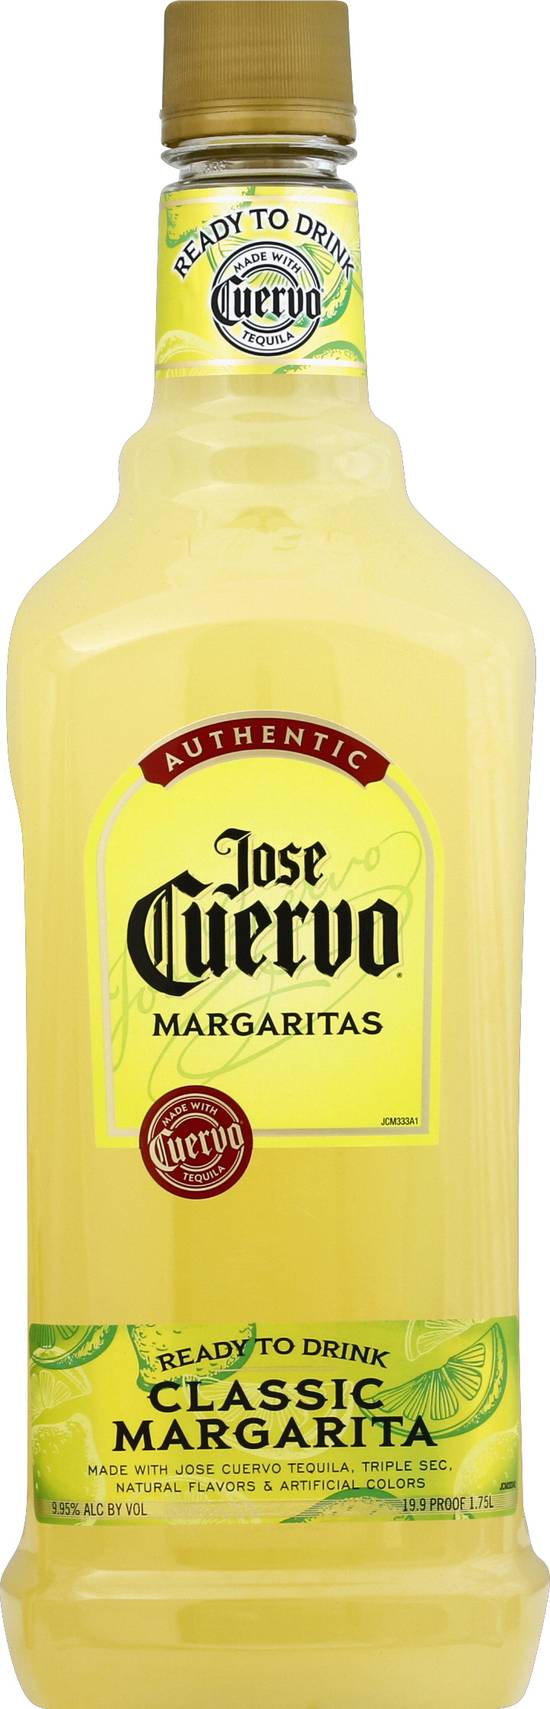 Jose Cuervo Authentic Classic Margarita Tequila (1.75 L)